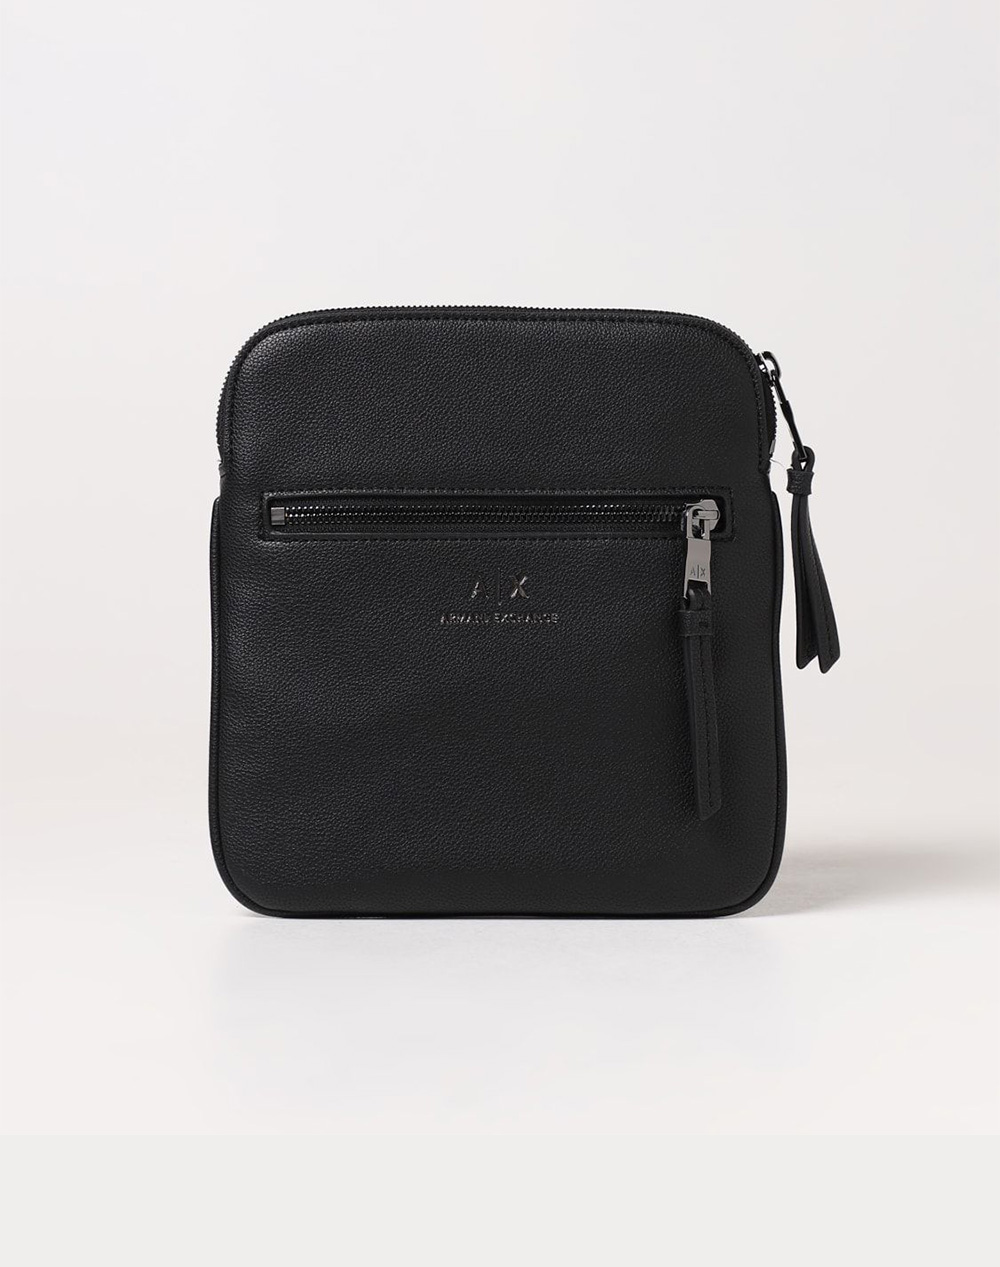 Leather Emporio Armani Bags for Men - Vestiaire Collective